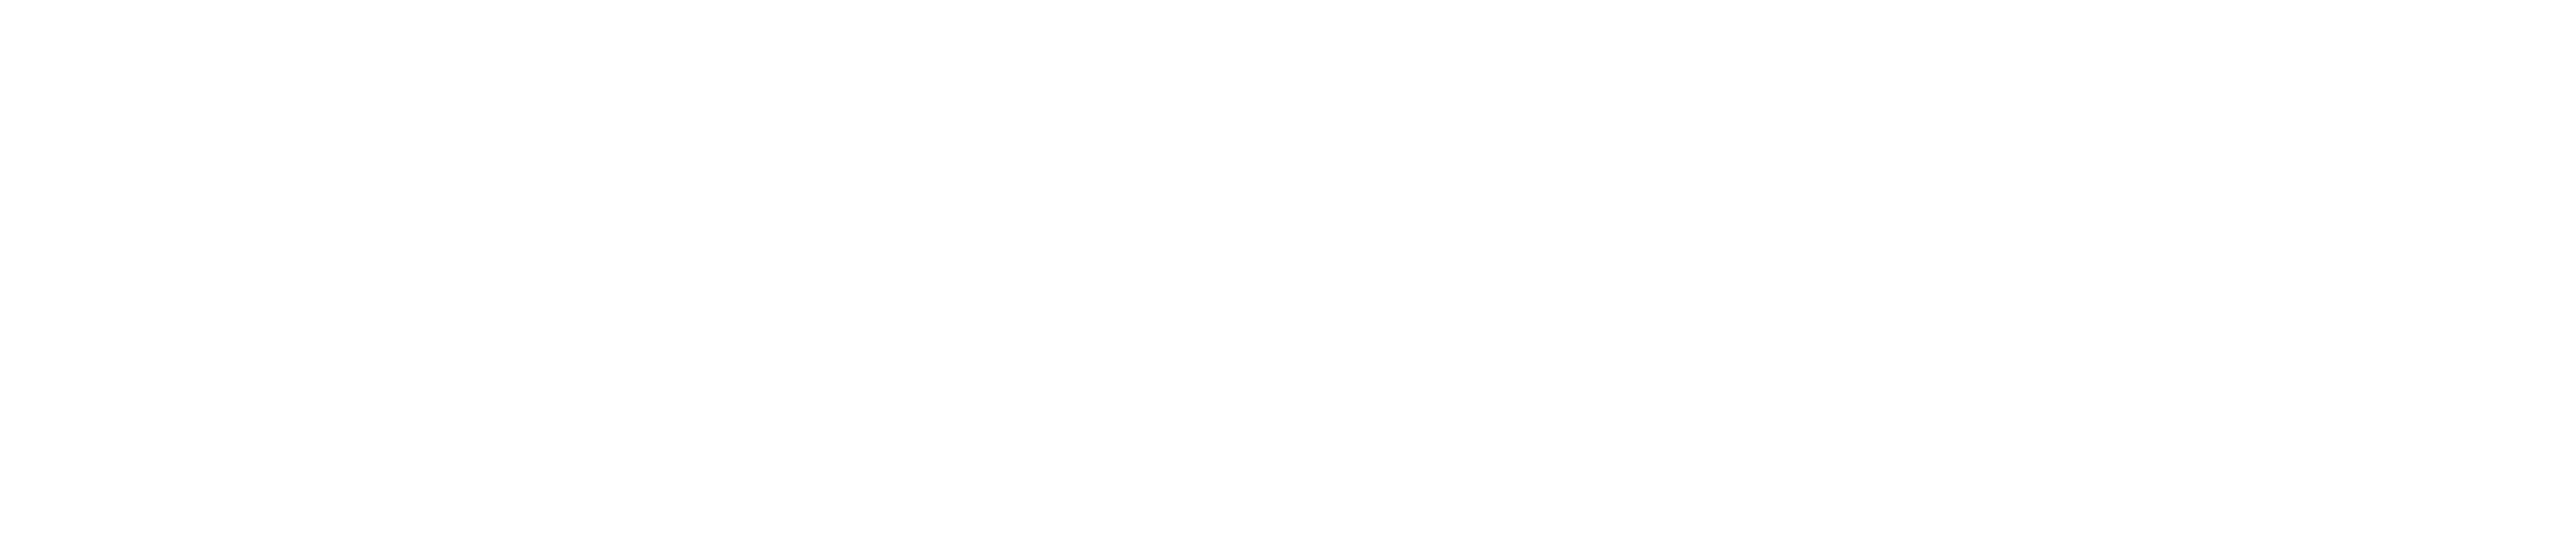 J. Felber - Shop für Juwelier- und Goldschmiedbedarf-Logo